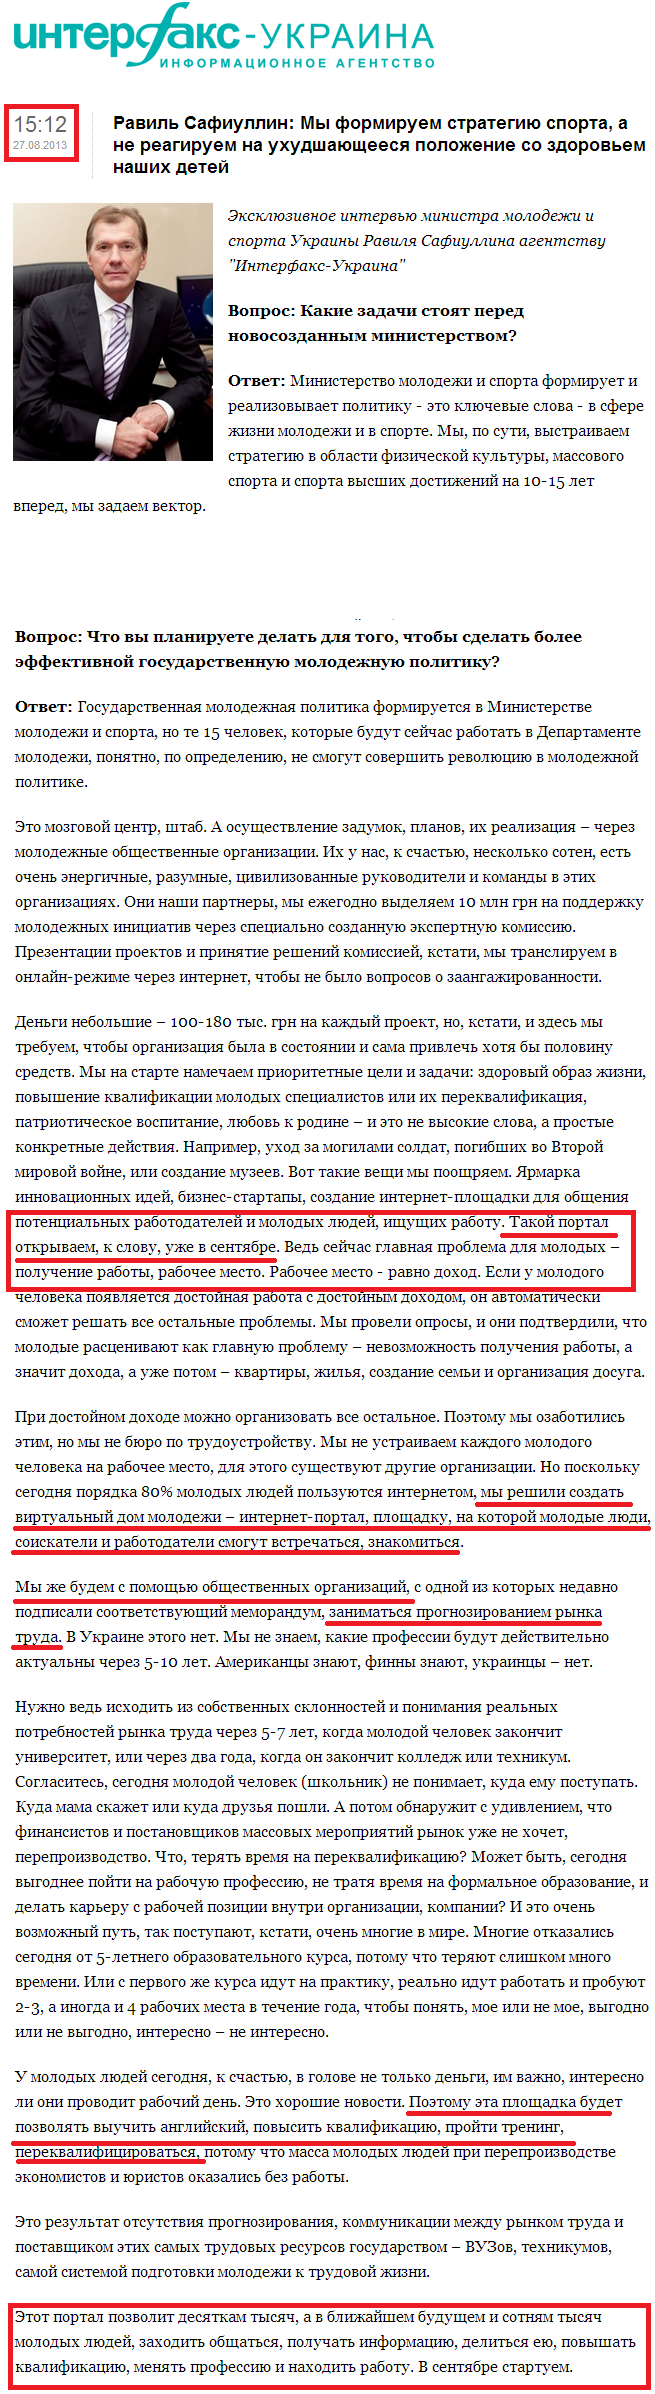 http://interfax.com.ua/news/interview/165480.html